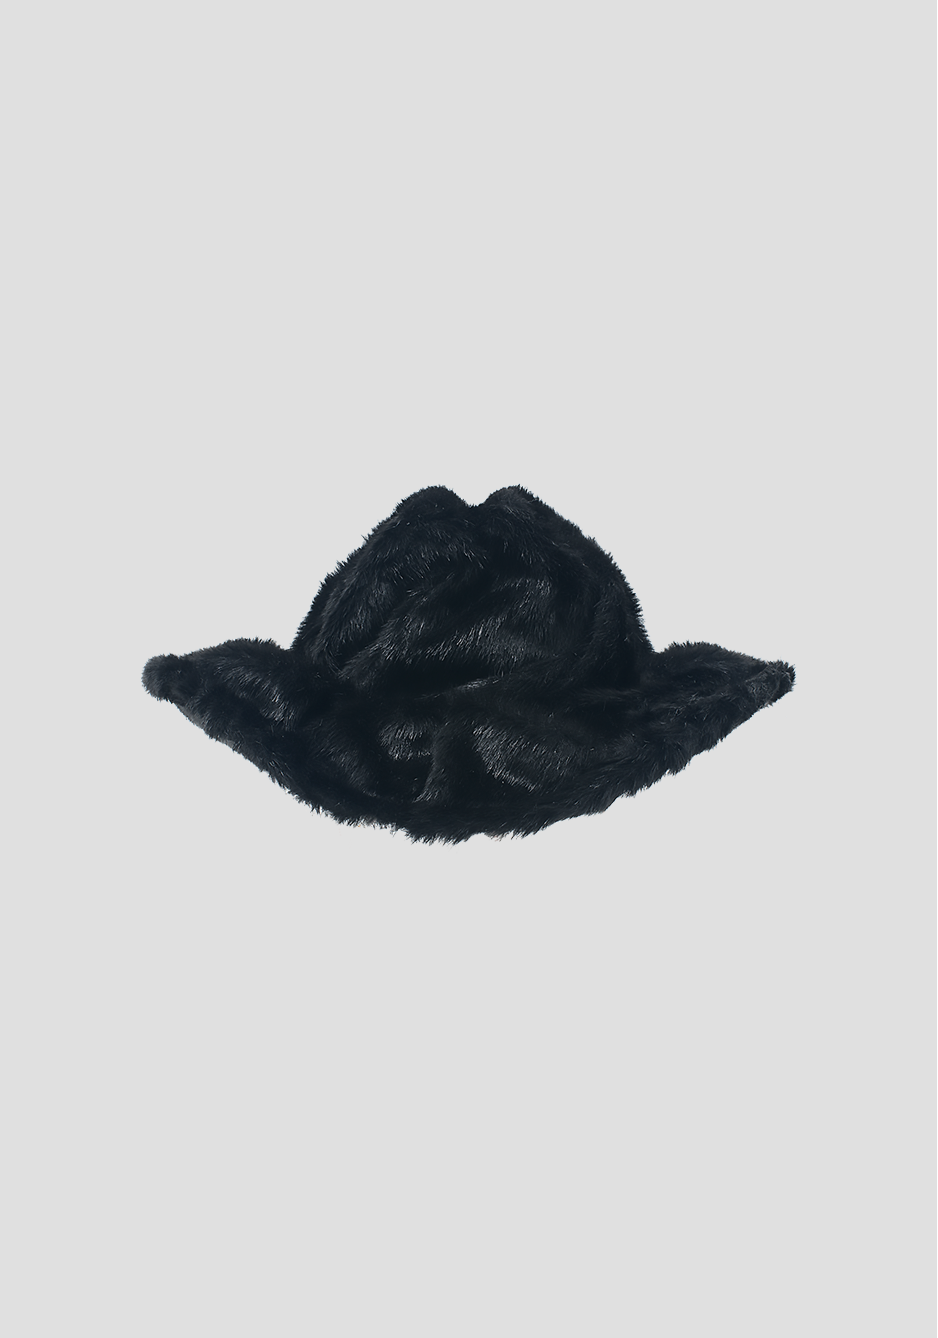 Antlers Cowboy Hat in Black